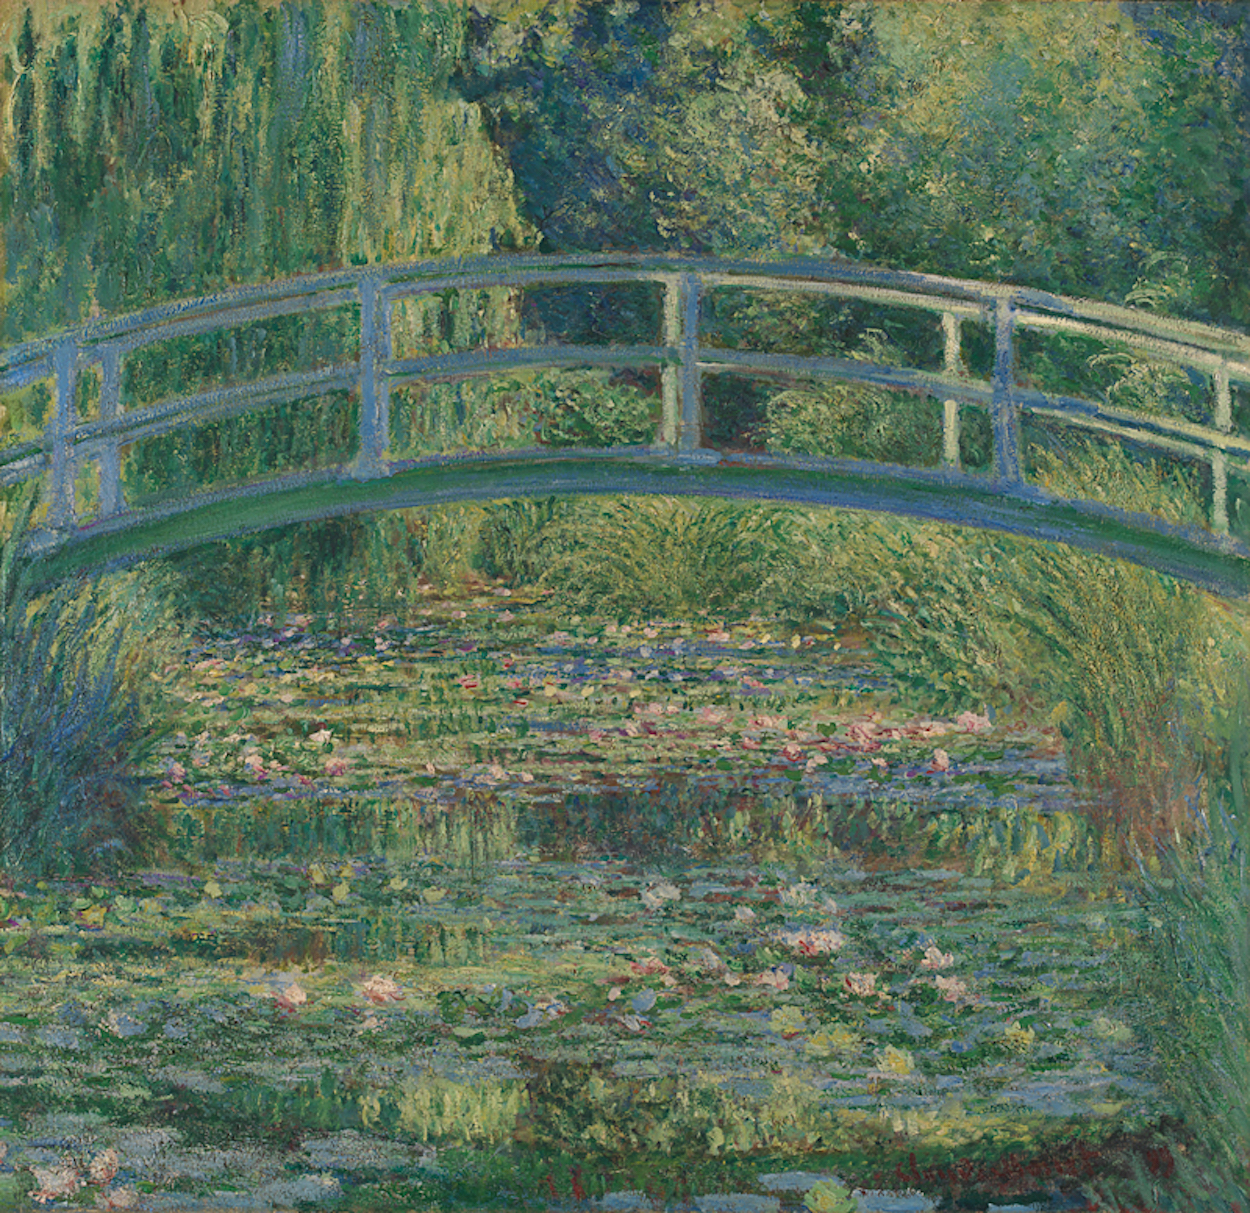 睡蓮池 by Claude Monet - 1899 - 88.3 x 93.1 cm 